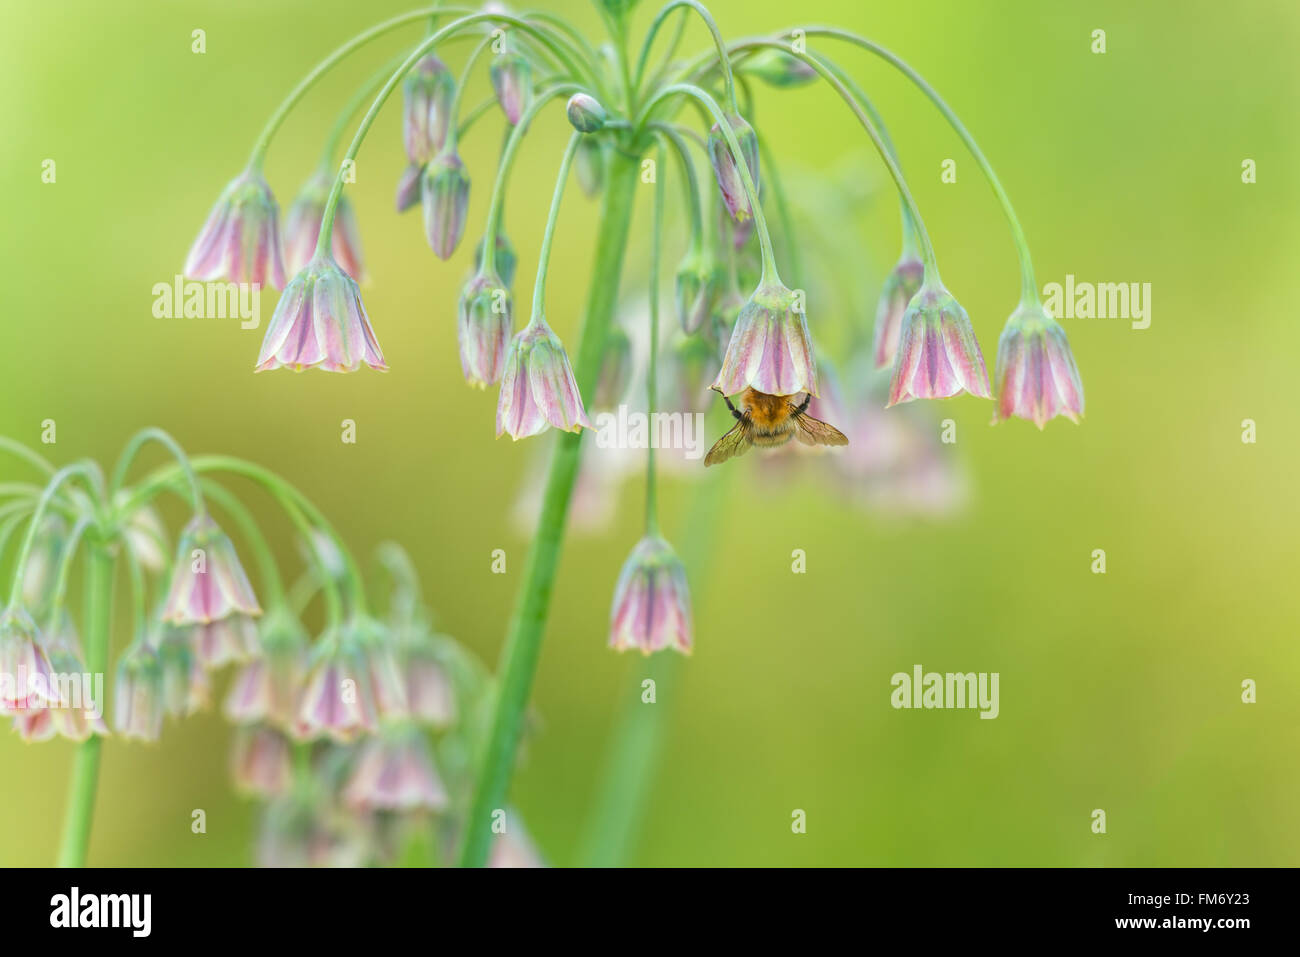 Color pastello in scena a luce morbida di bee impollinatori allium fiori. devon, Regno Unito. giugno Foto Stock